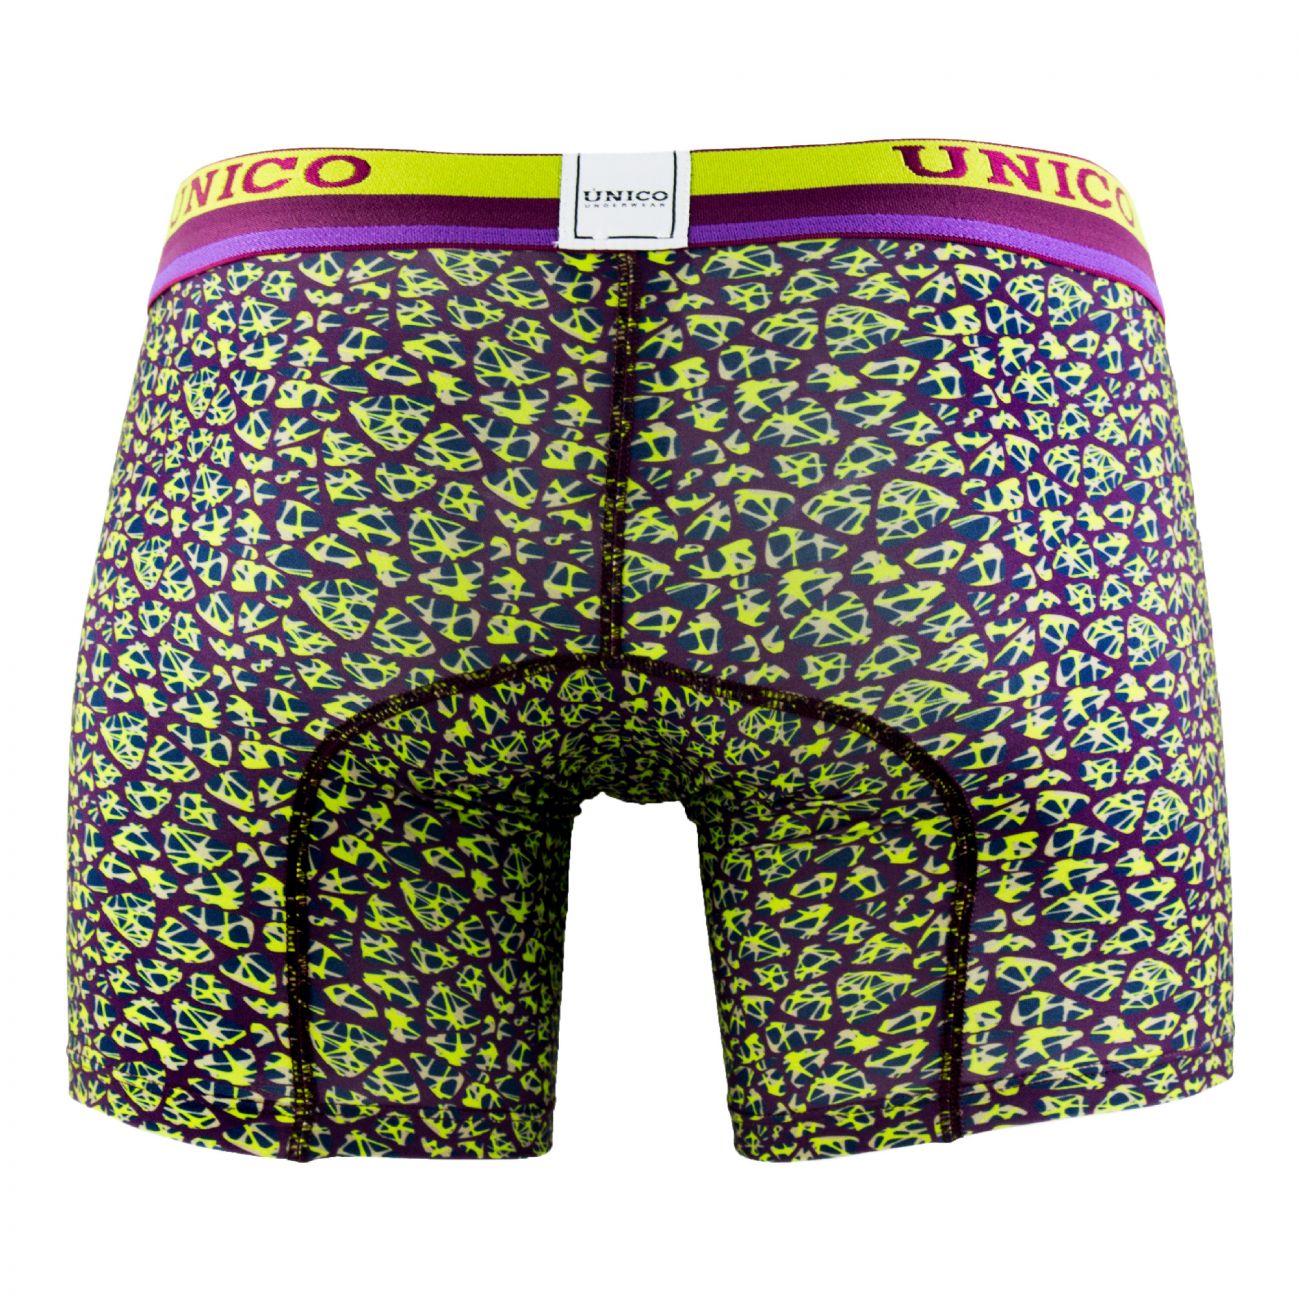 Mens Underwear: Unico 1802010024193 Boxer Briefs Huerta | eBay